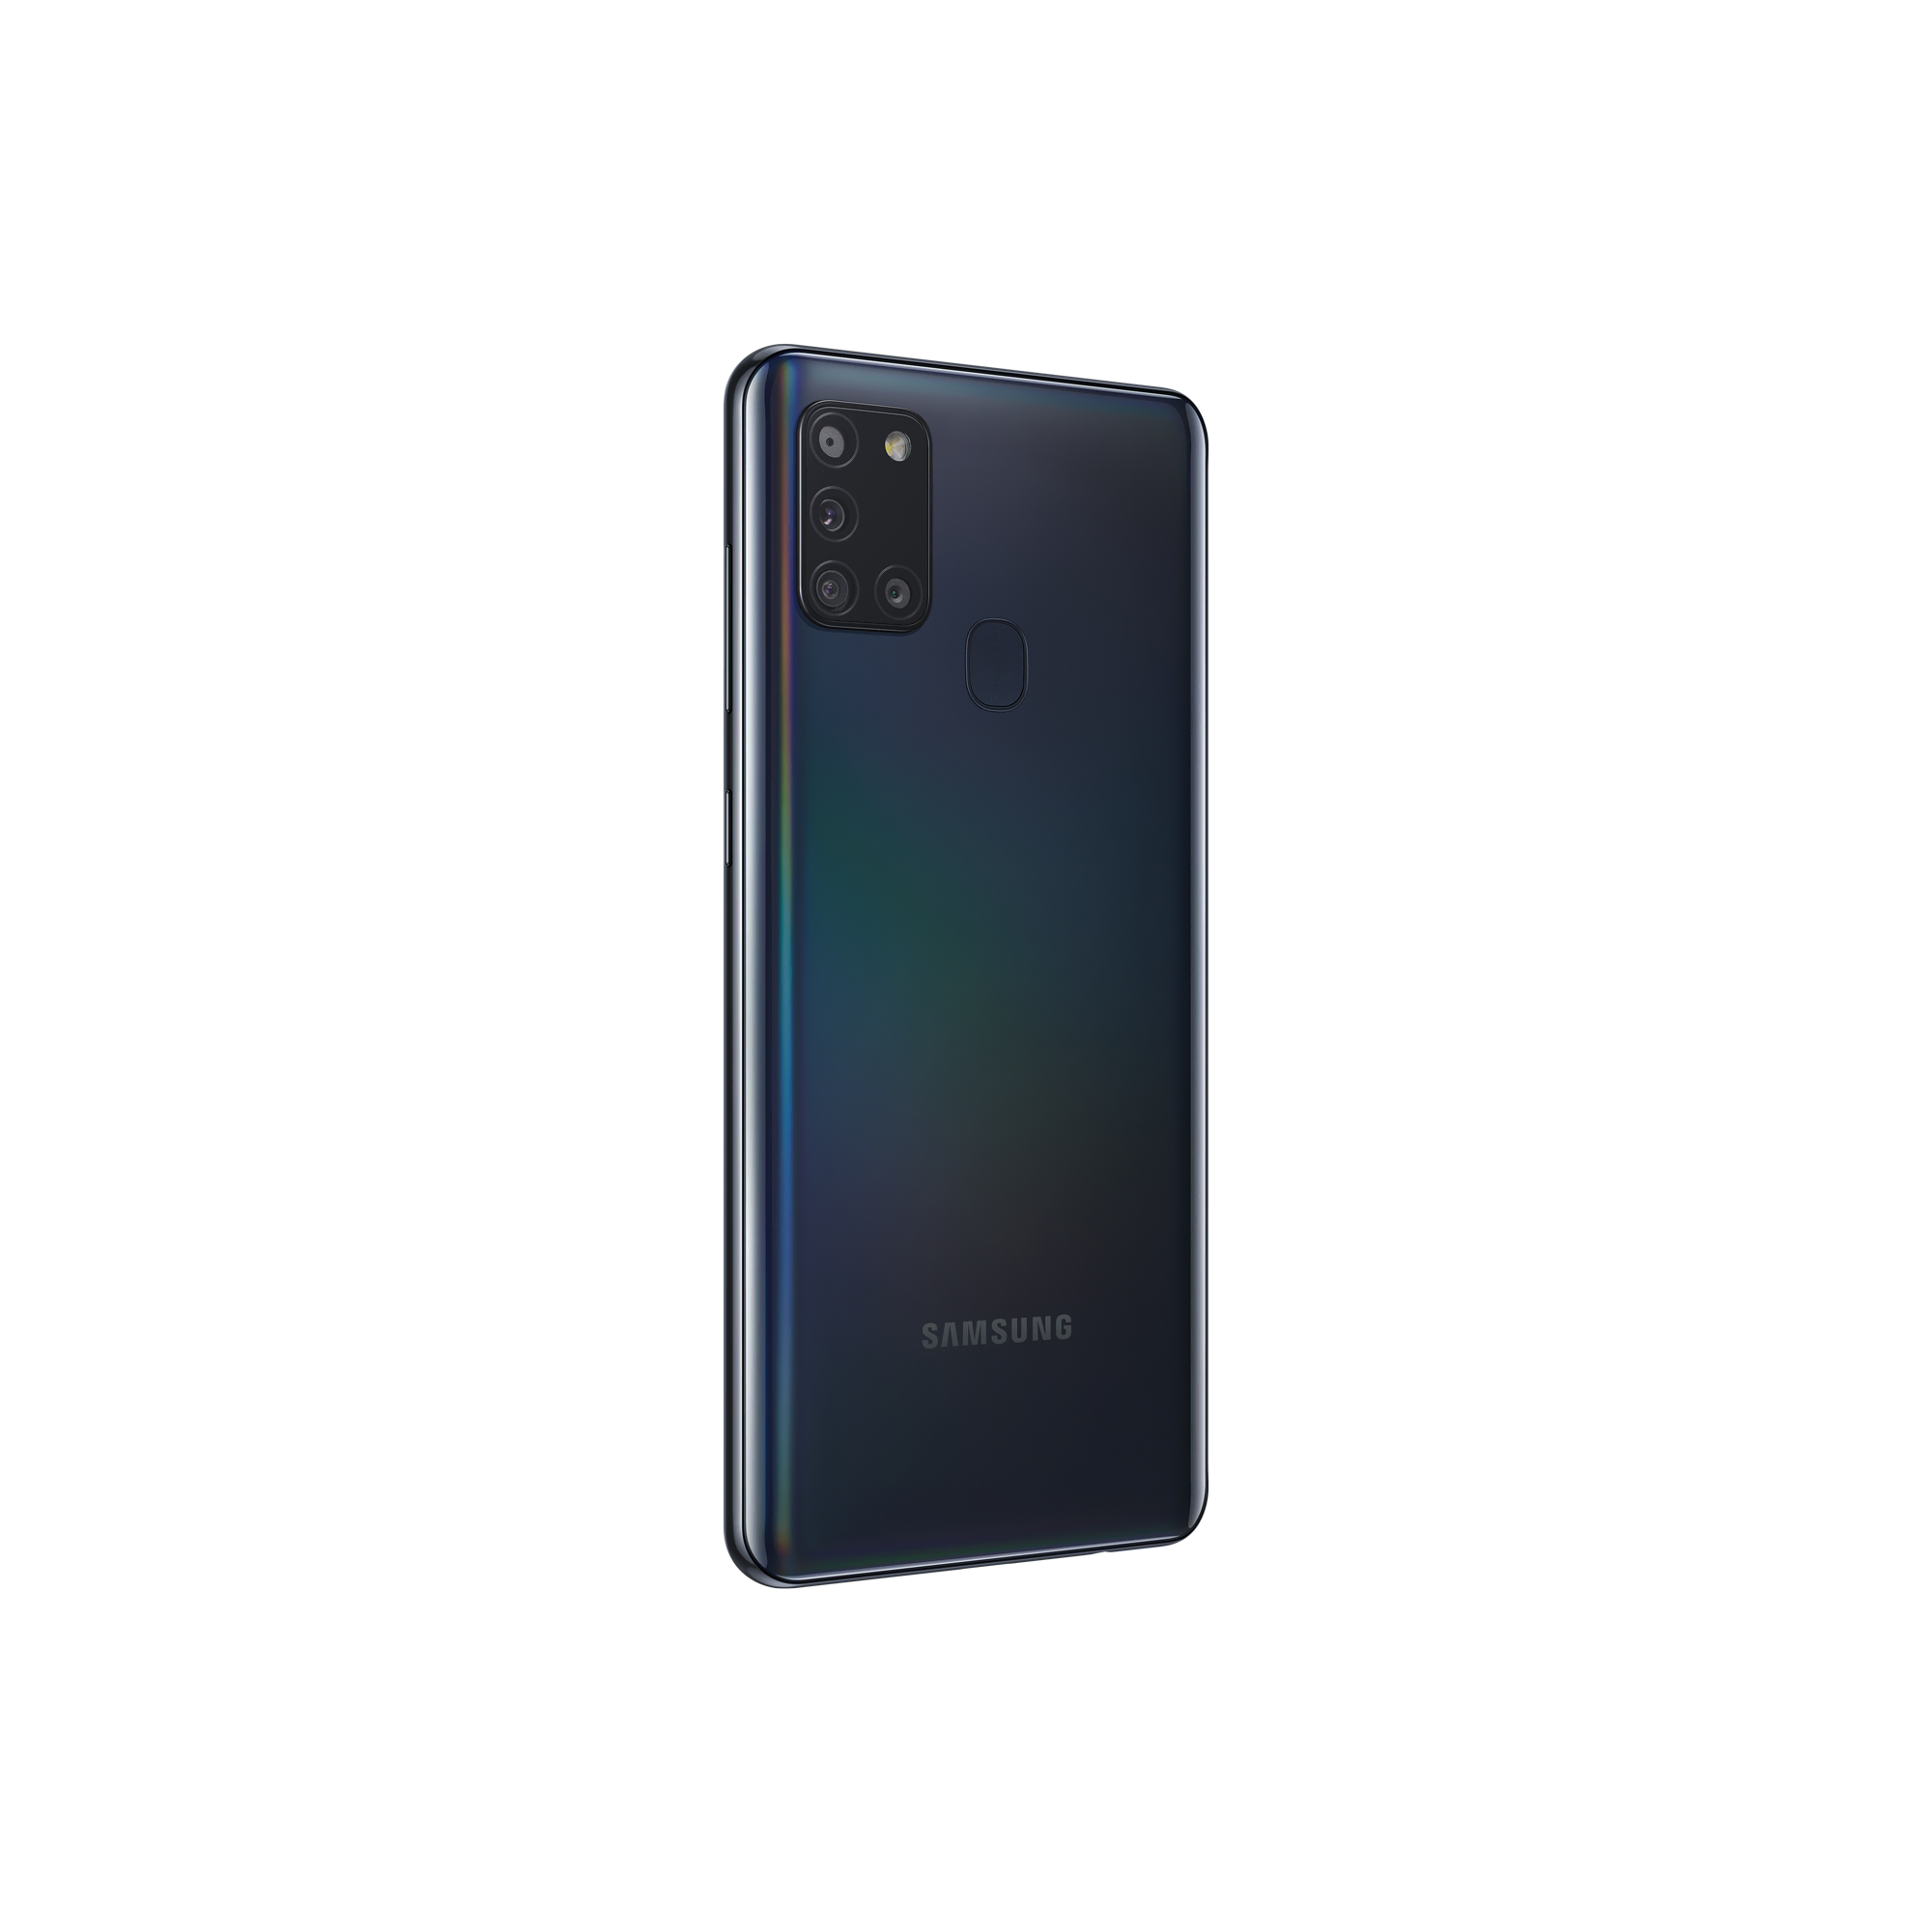 Samsung Galaxy A21s Siyah Android Telefon Modelleri